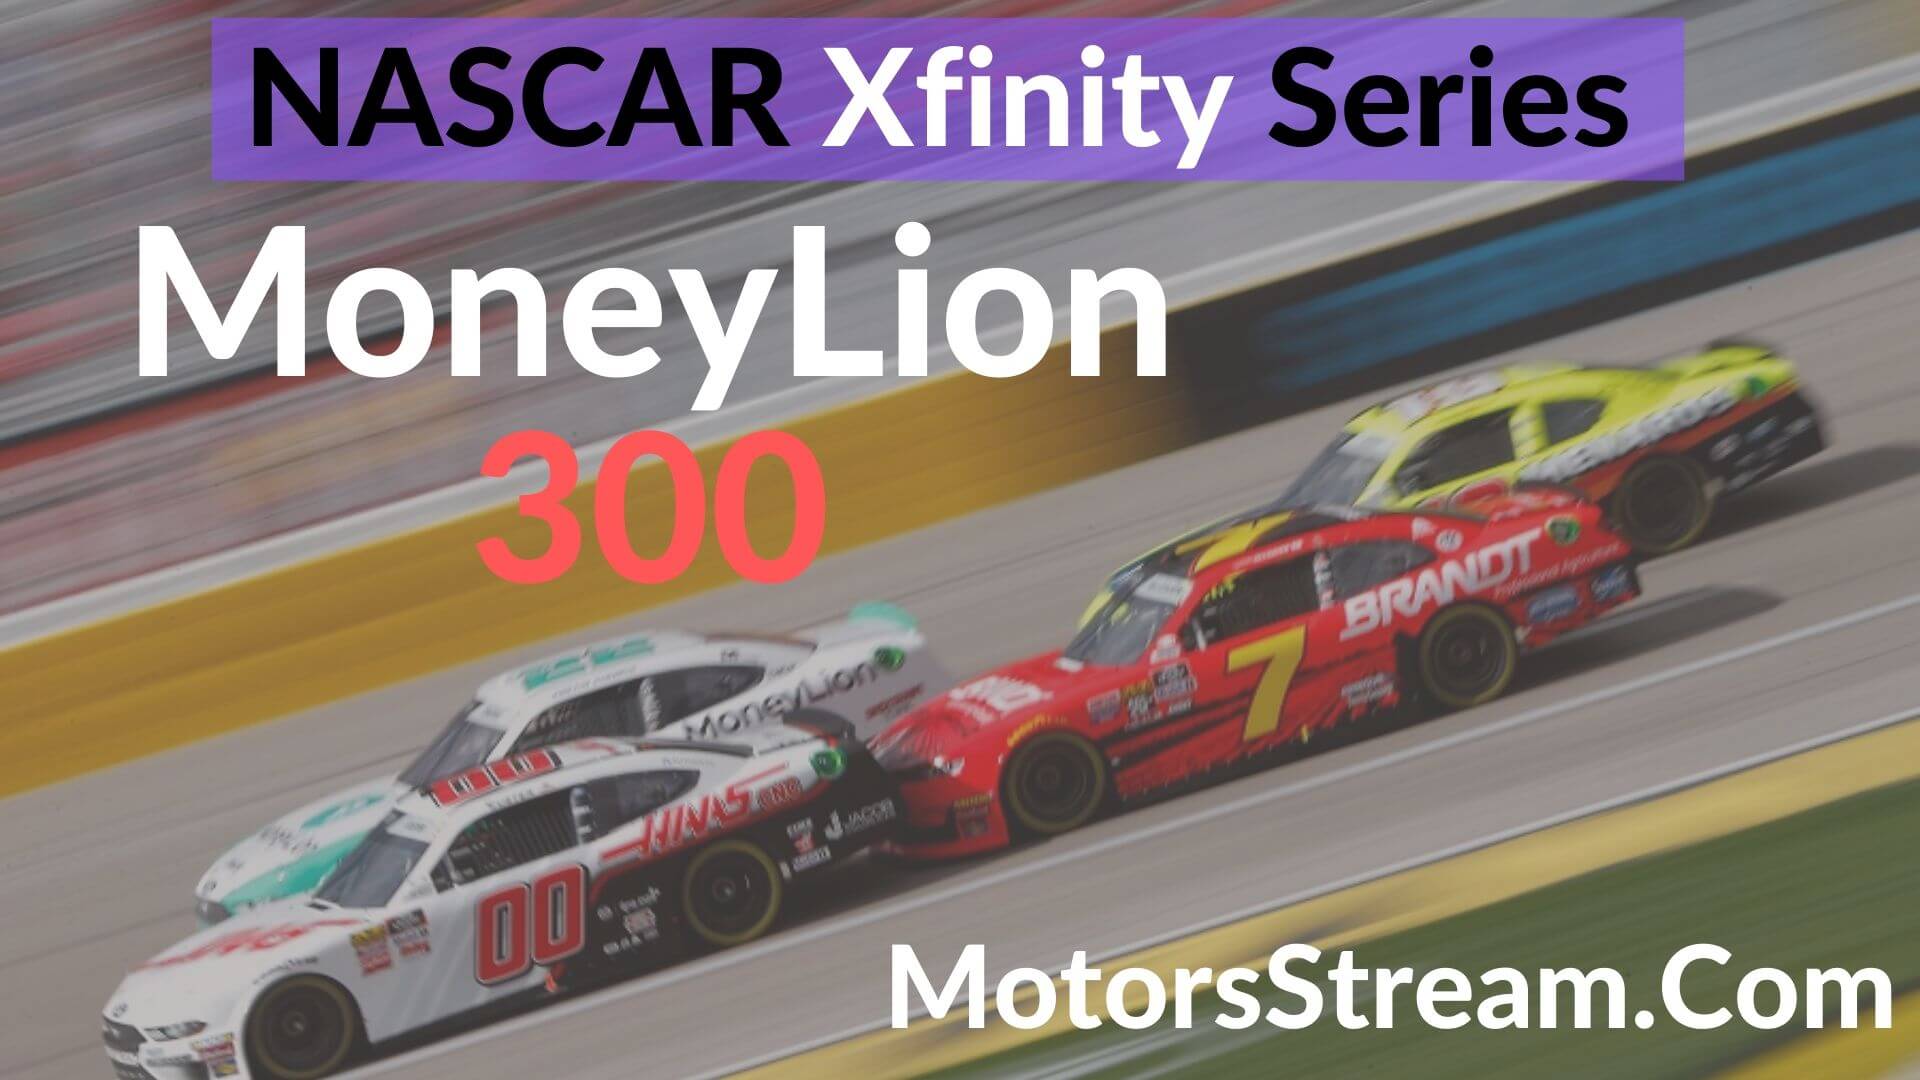 NASCAR Xfinity MoneyLion 300 Talladega 2019 Live Stream